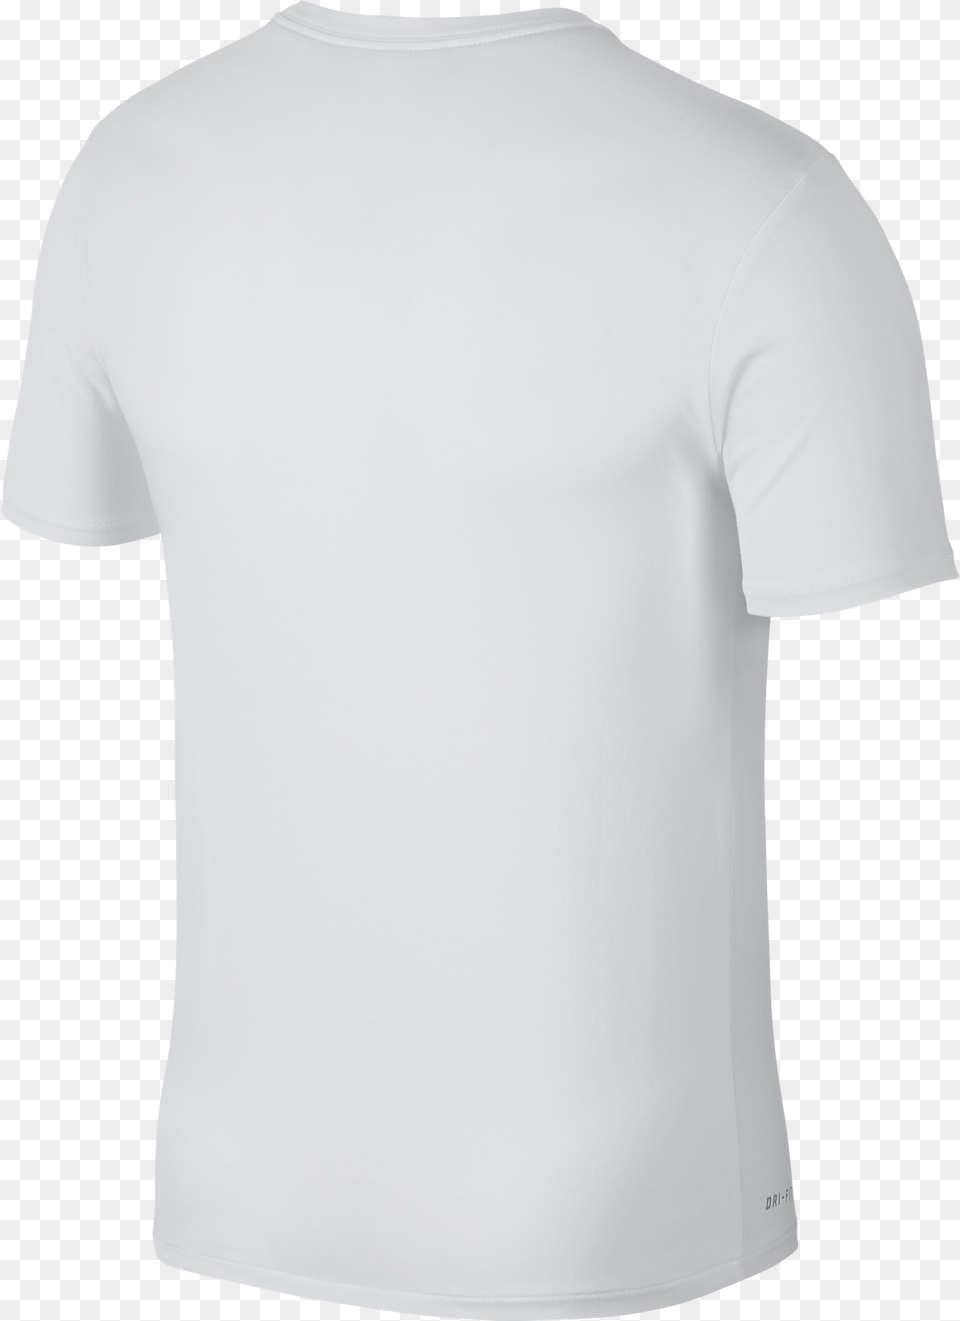 Nike Hard Work Dry Elite Tee Women39s T Shirt Back, Clothing, T-shirt Free Png Download